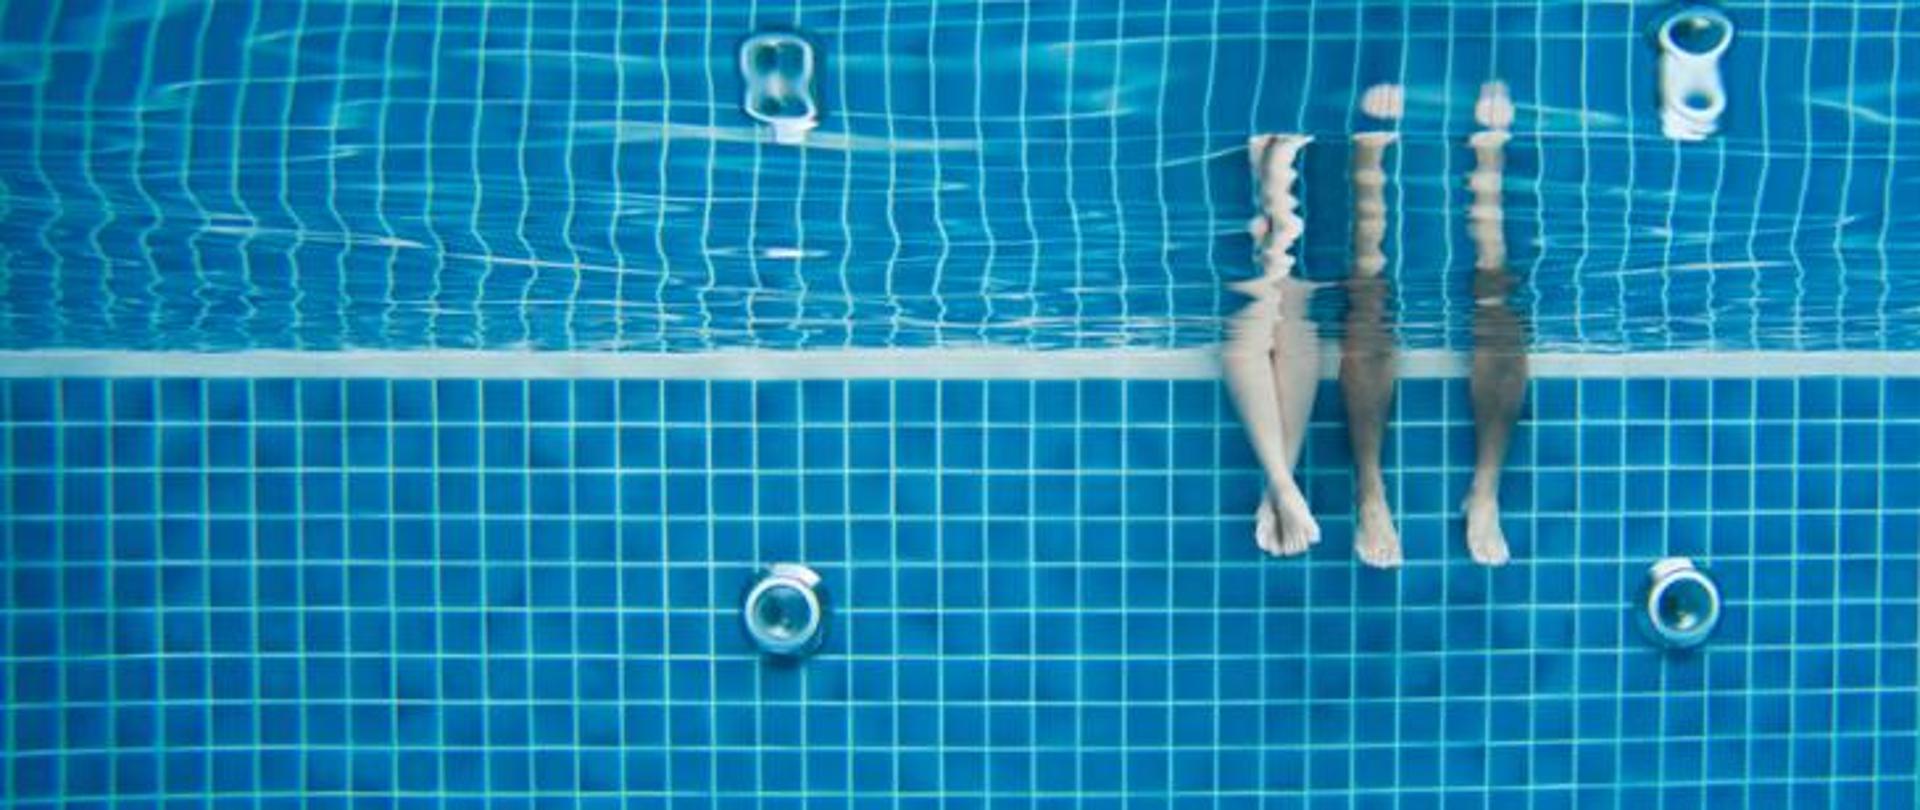 Zdjęcie zrobione na basenie pod wodą. Widać na nim dwie pary nóg.